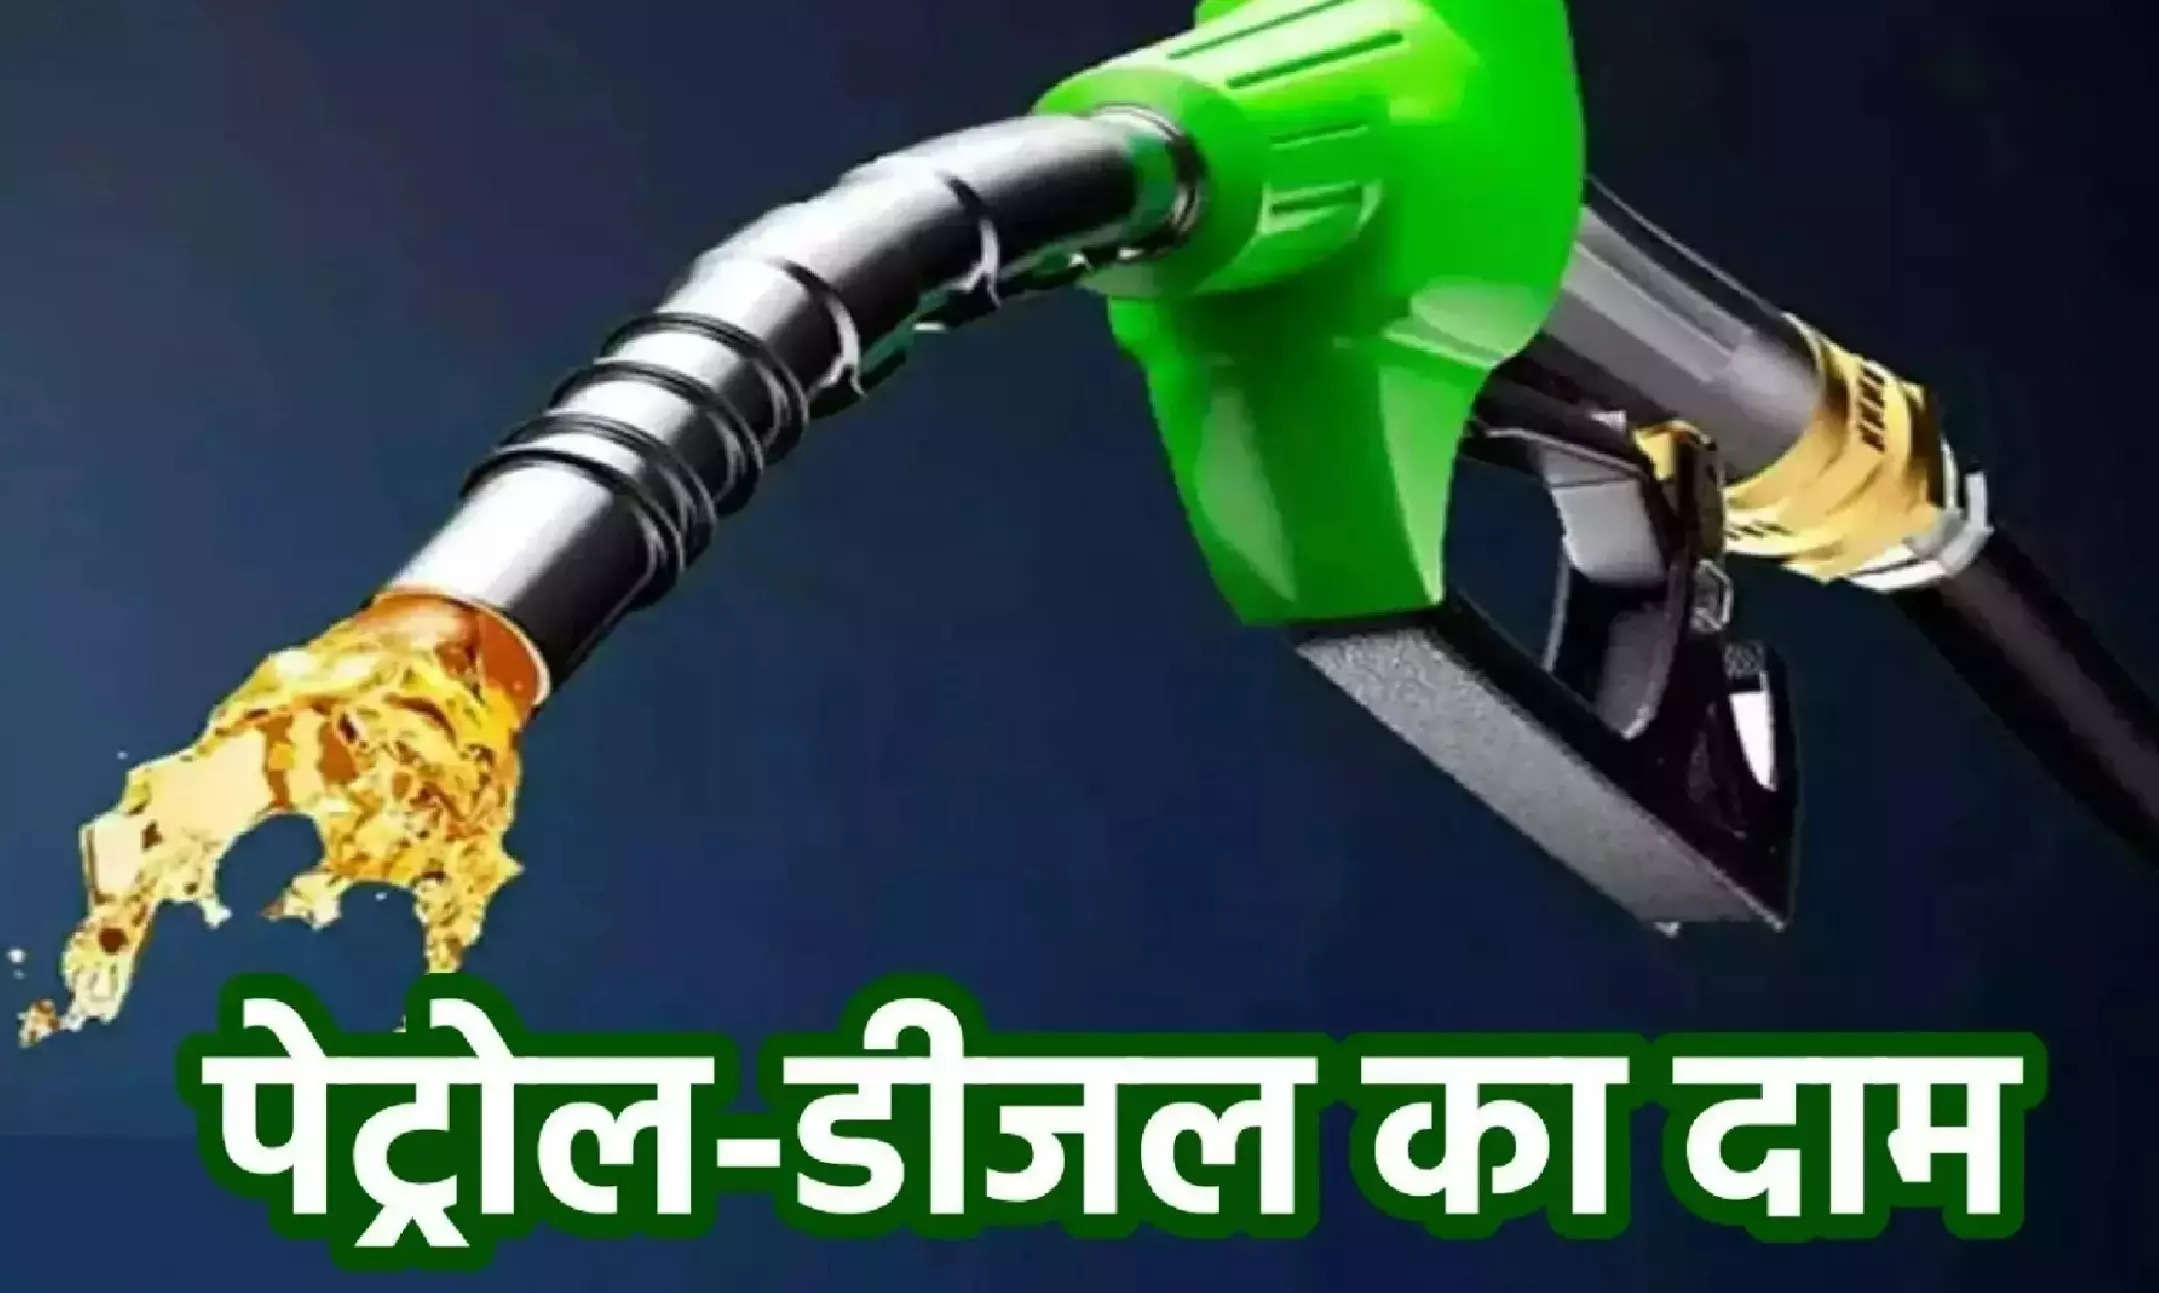 Petrol-Diesel Price Today: पेट्रोल-डीजल की नई कीमतें जारी, जानें अपने शहर के ताजा भाव